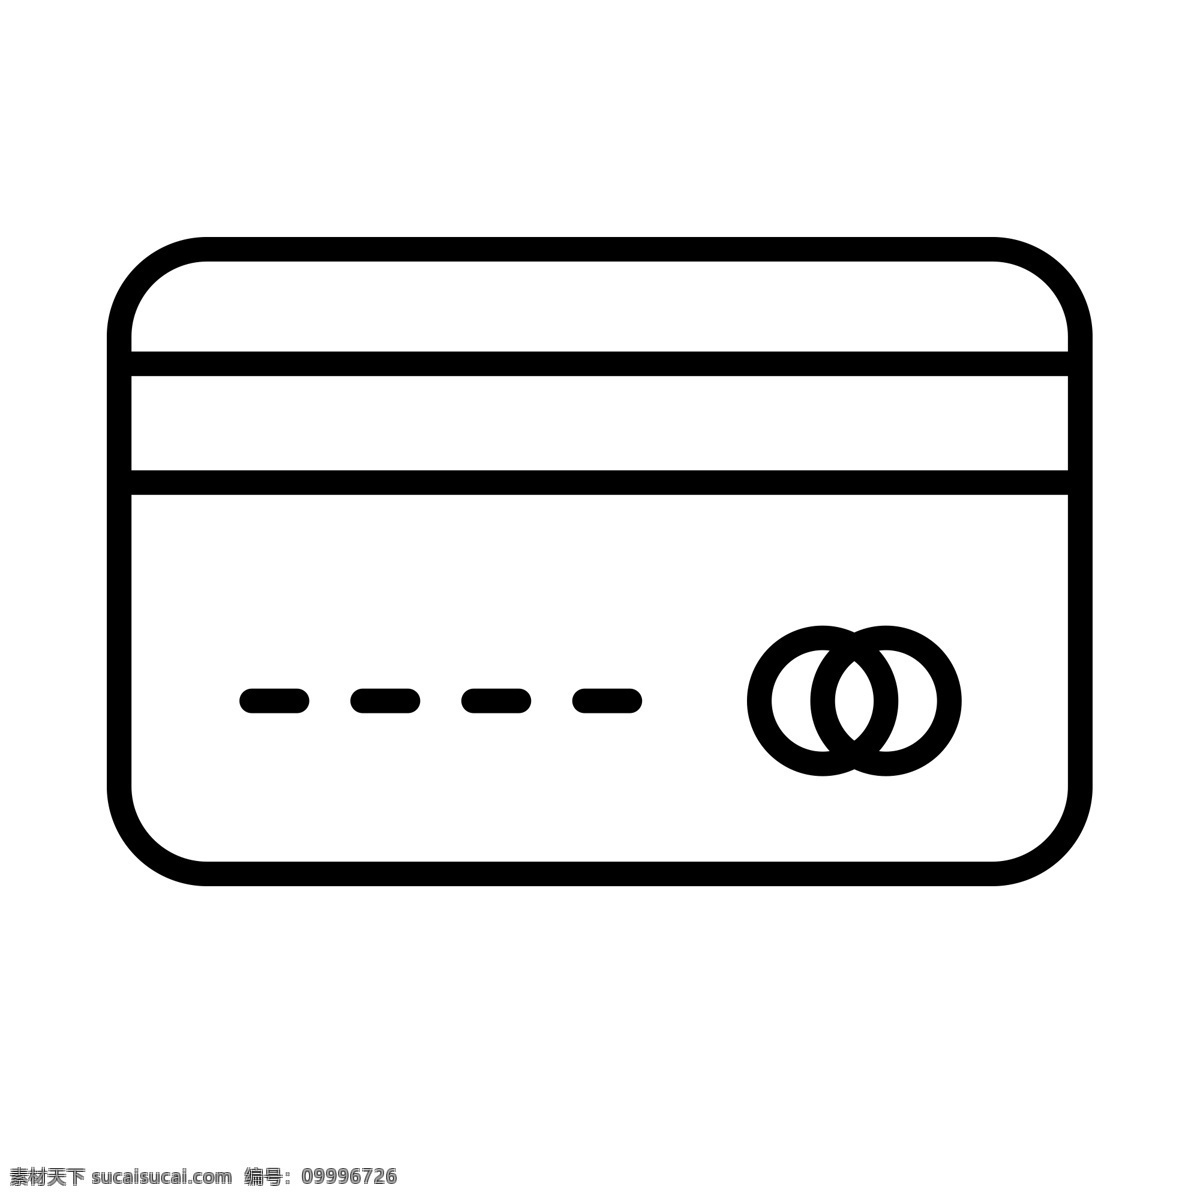 扁平化银行卡 信用卡 扁平化ui ui图标 手机图标 界面ui 网页ui h5图标